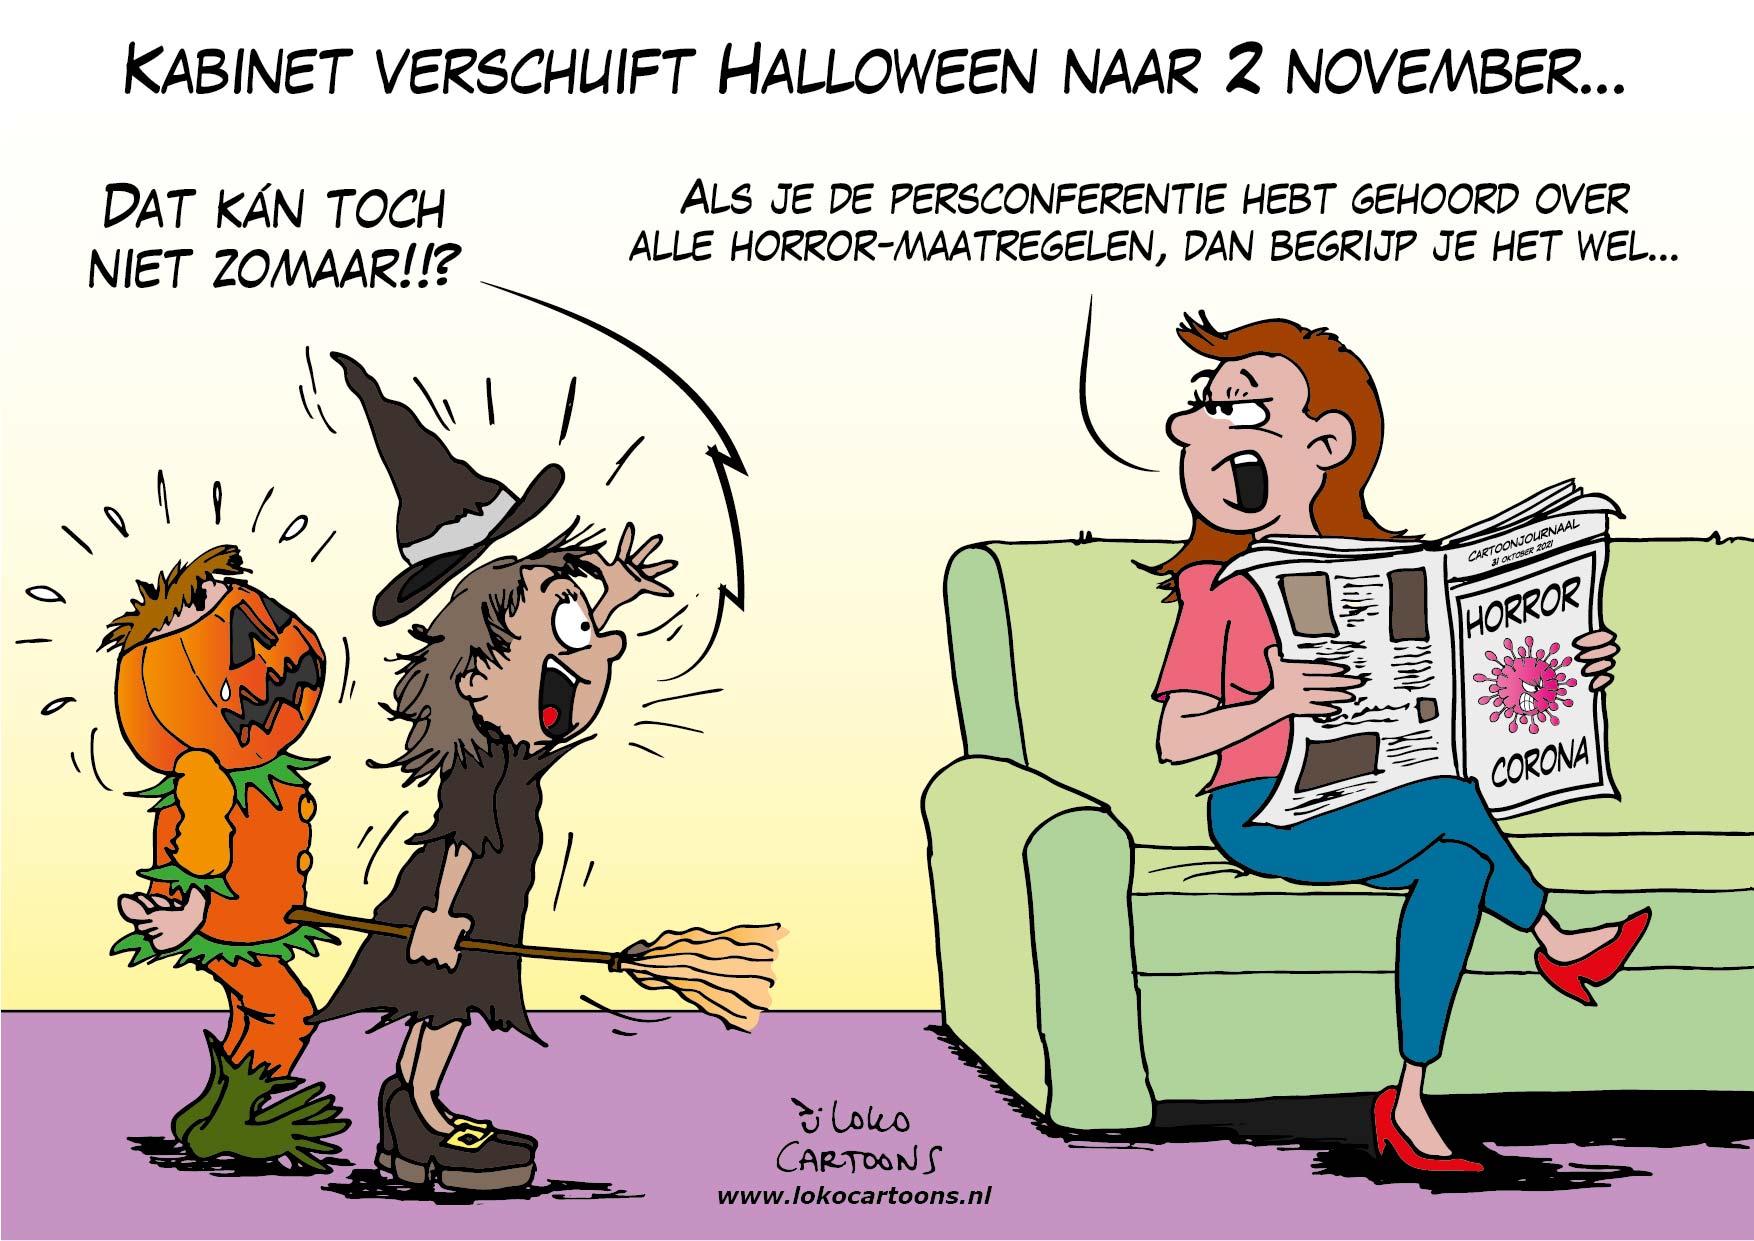 Kabinet verschuift Halloween naar 2 november…